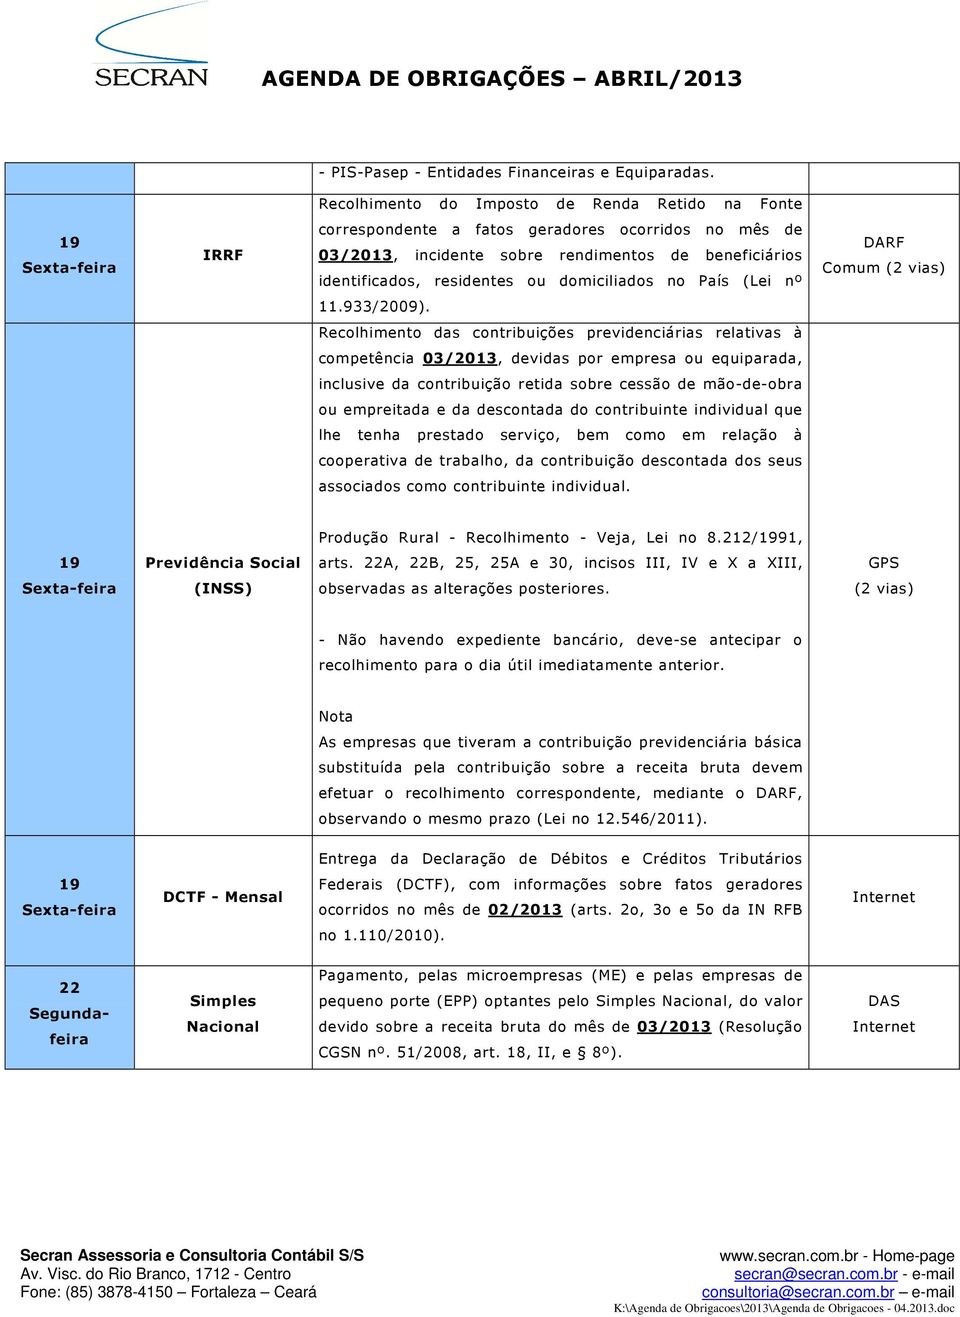 domiciliados no País (Lei nº DARF Comum 11.933/2009).